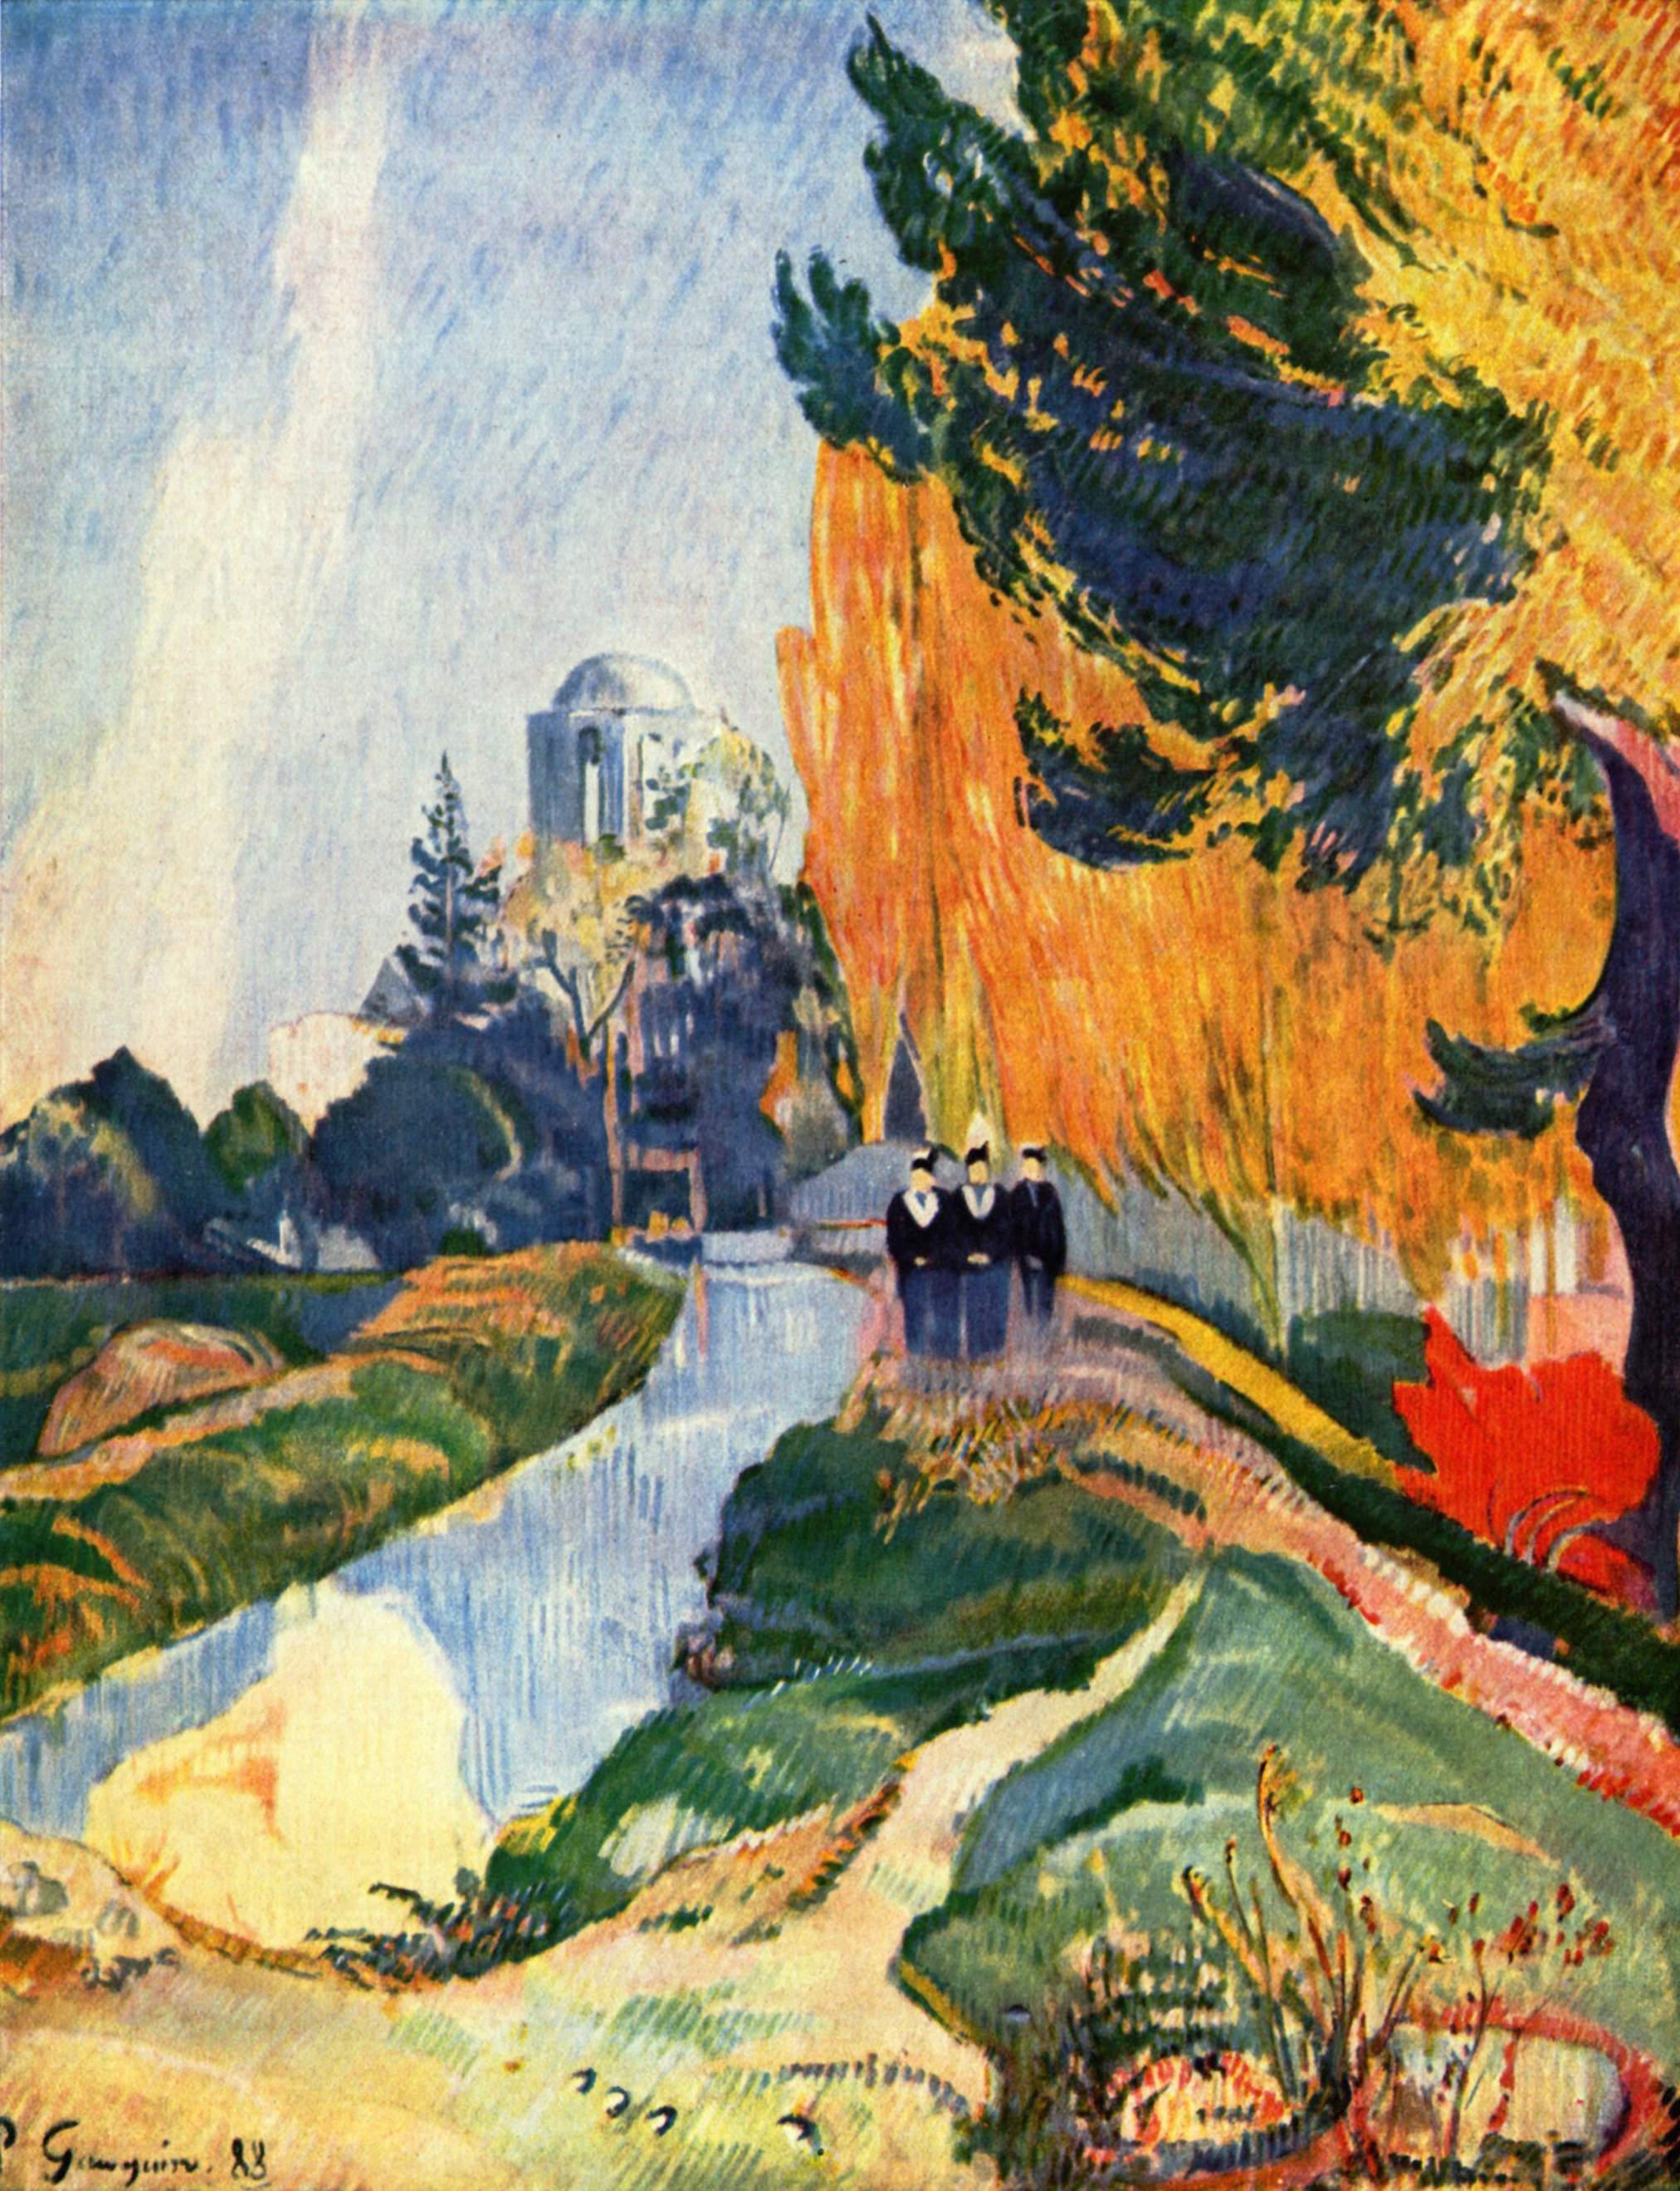 Les Alyscamps by Paul Gauguin - 1888 - 91.6 cm × 72.5 cm Musée d'Orsay